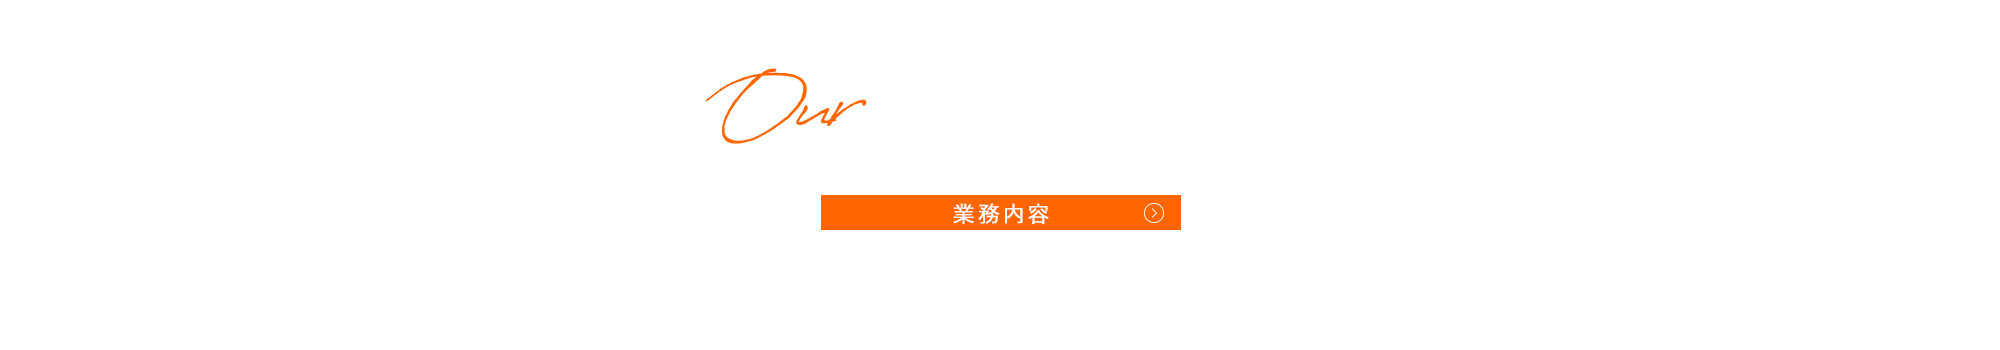 bnr_business